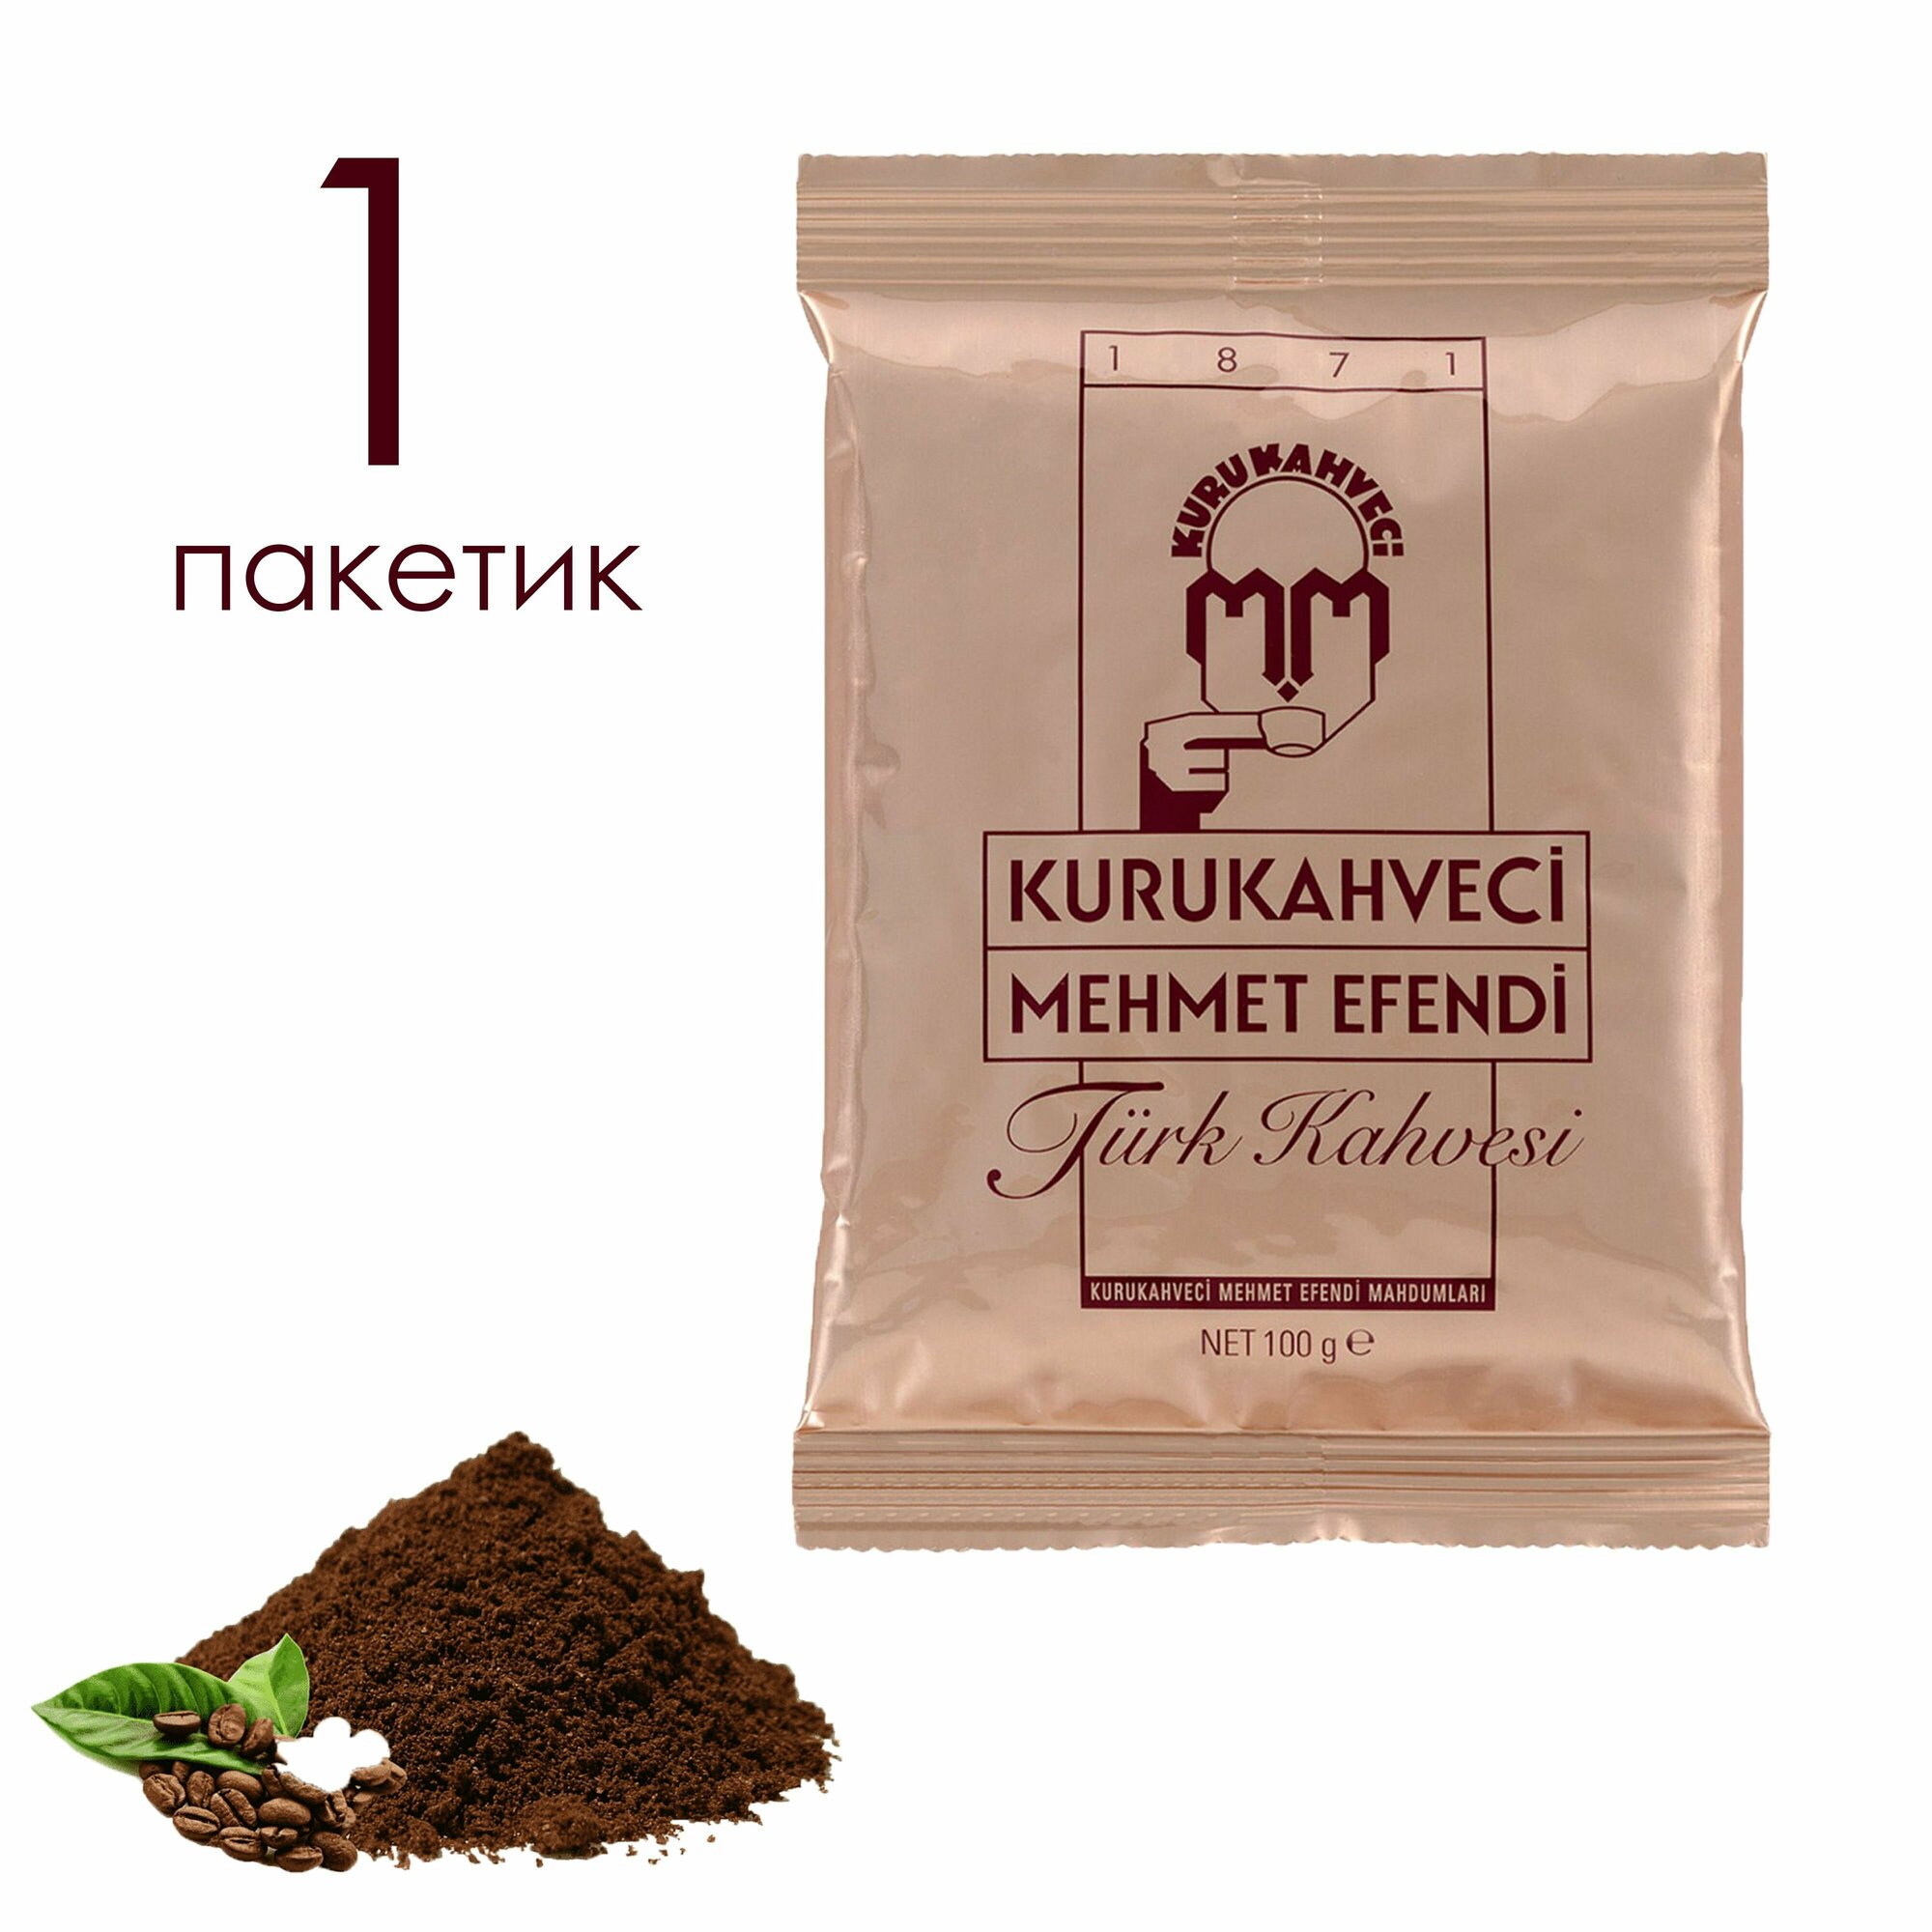 KURUKAHVECI MEHMET EFENDI 100 гр Турецкий кофе (TURK KAHVESI 1/25)